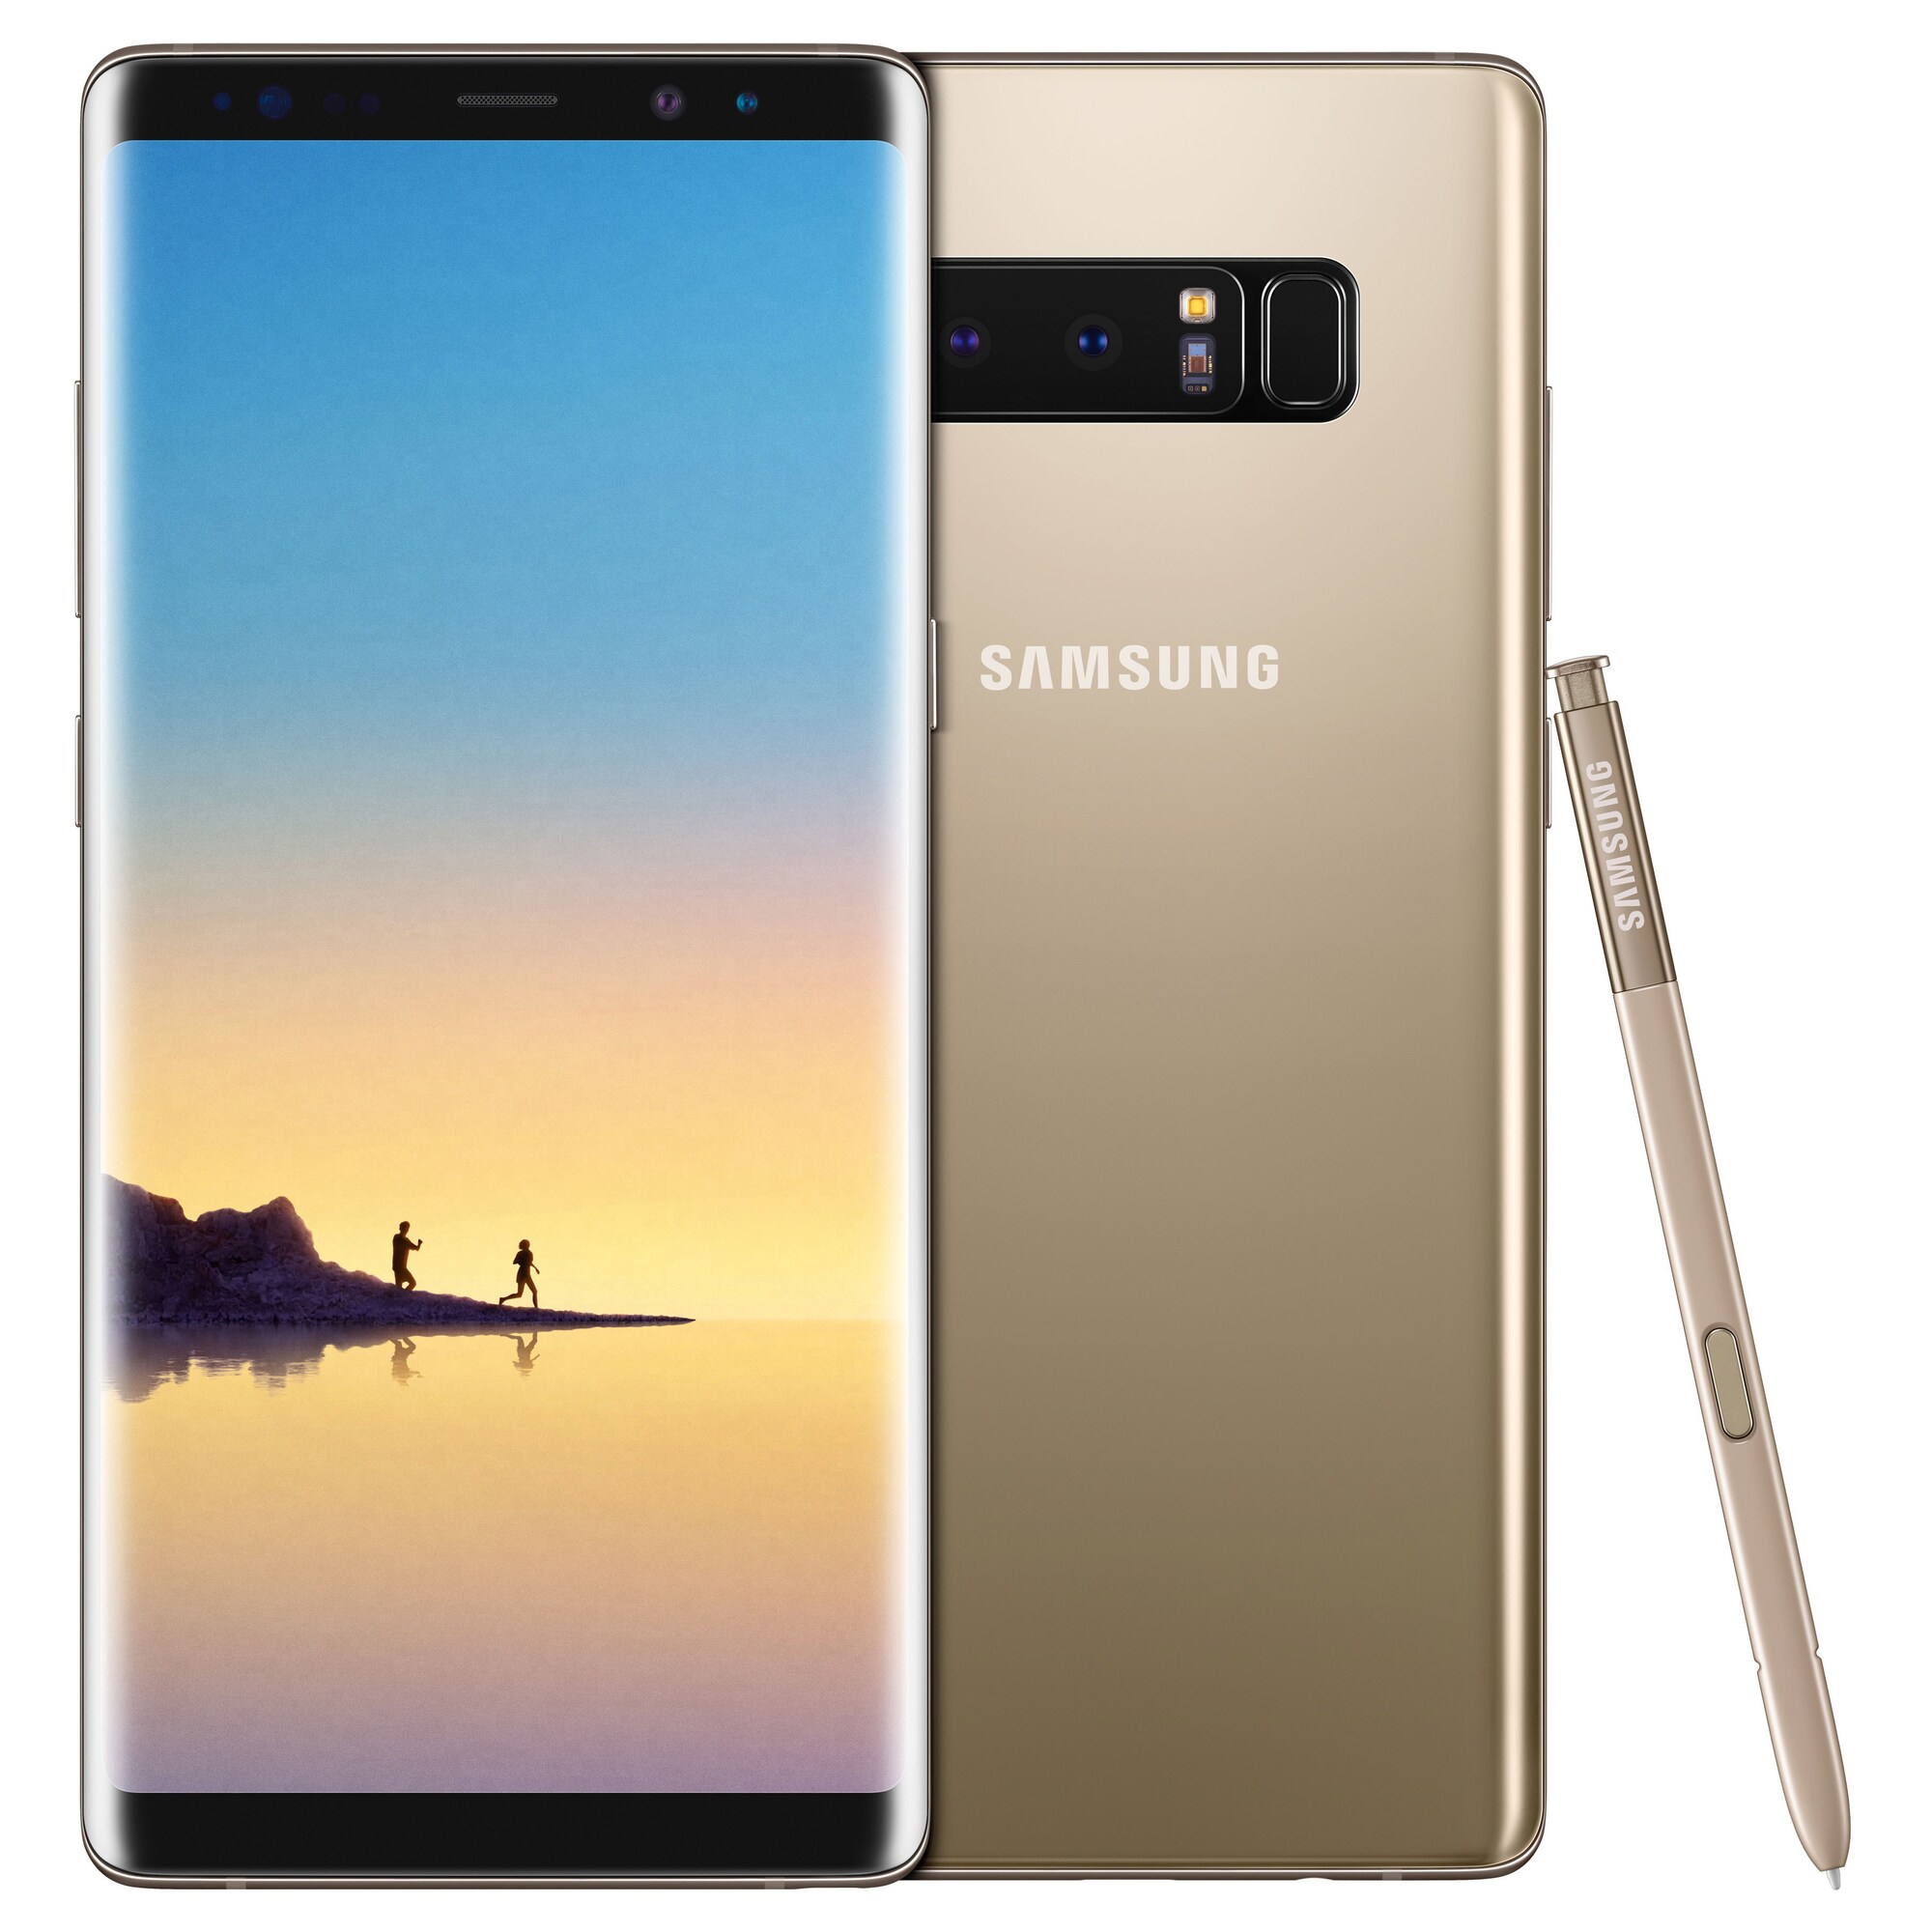 Samsung Galaxy Note 8 smartphone TELENOR (guld) | Elgiganten